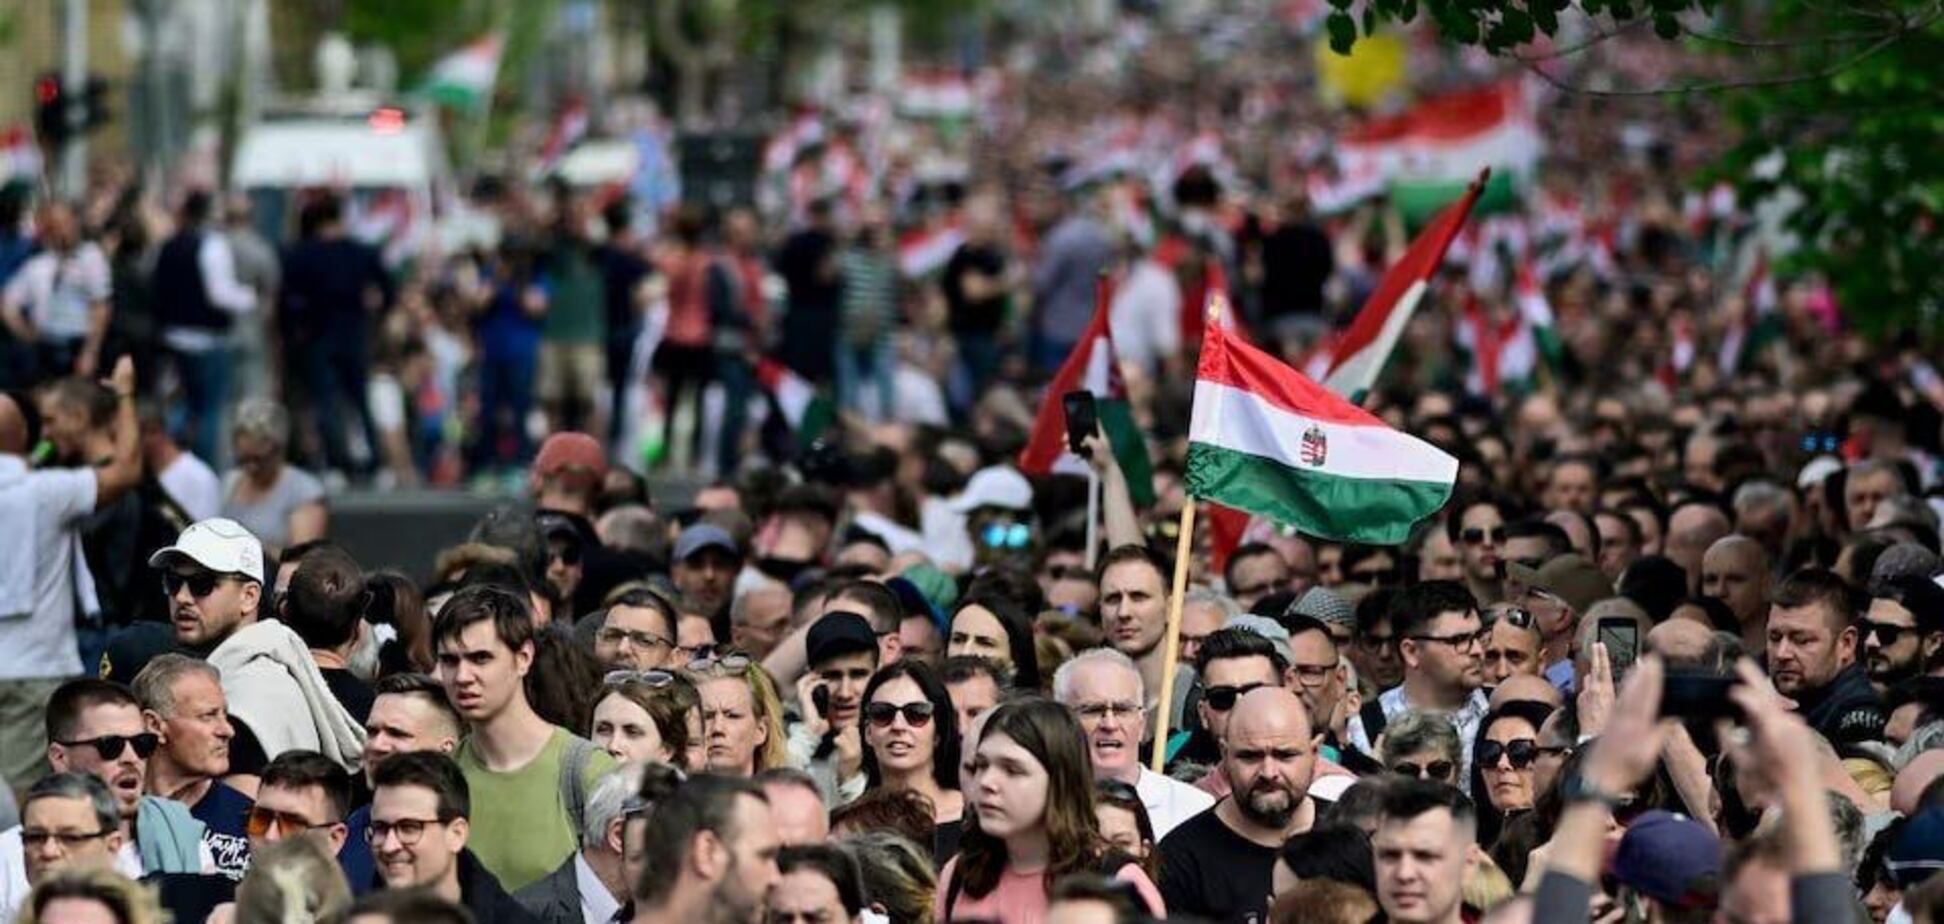 В центре Будапешта прошла масштабная акция протеста против правительства Орбана. Фото и видео